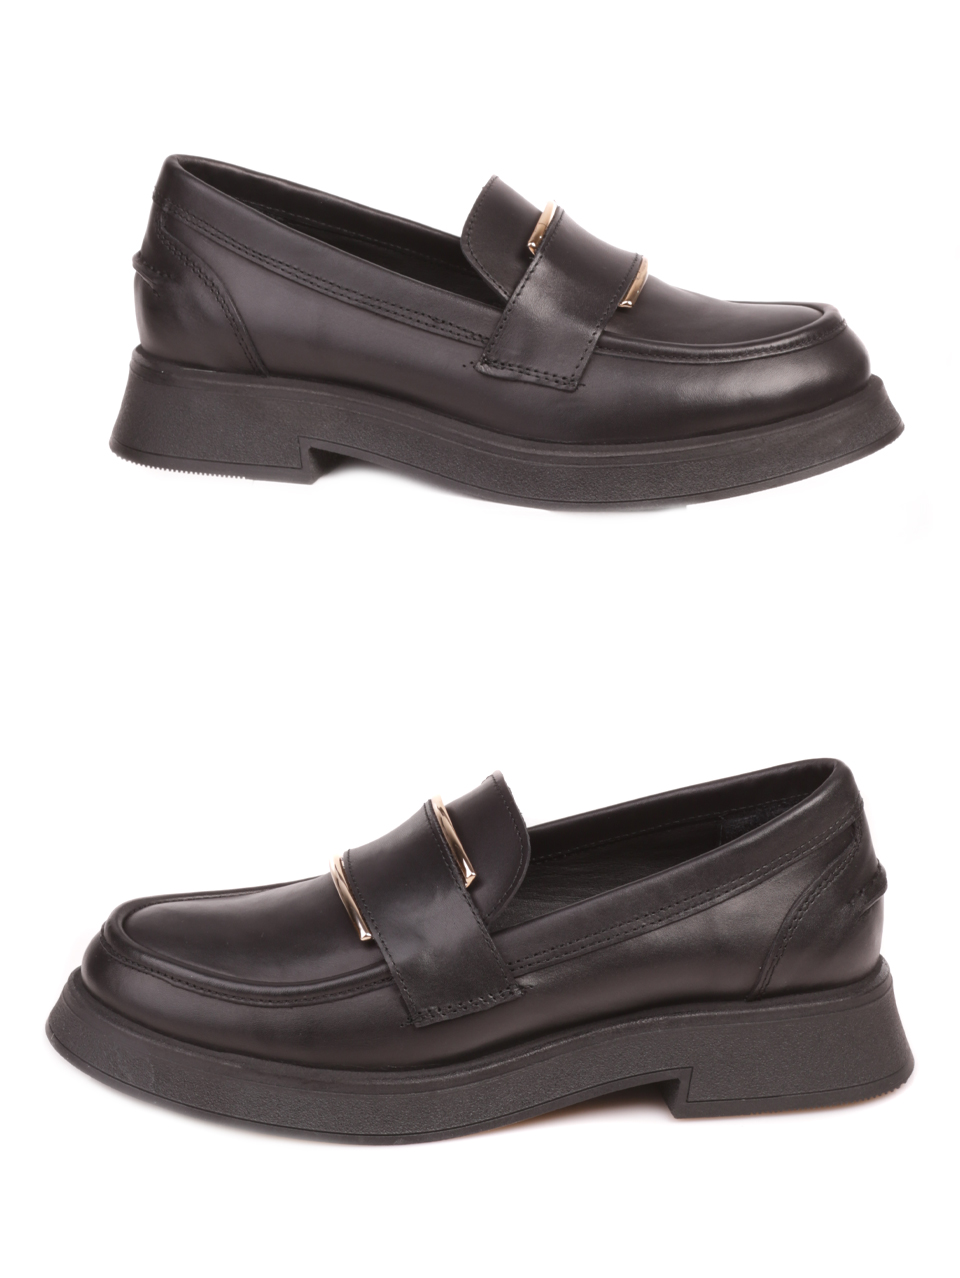 Дамски обувки от естествена кожа в черно 3AT-23762 black